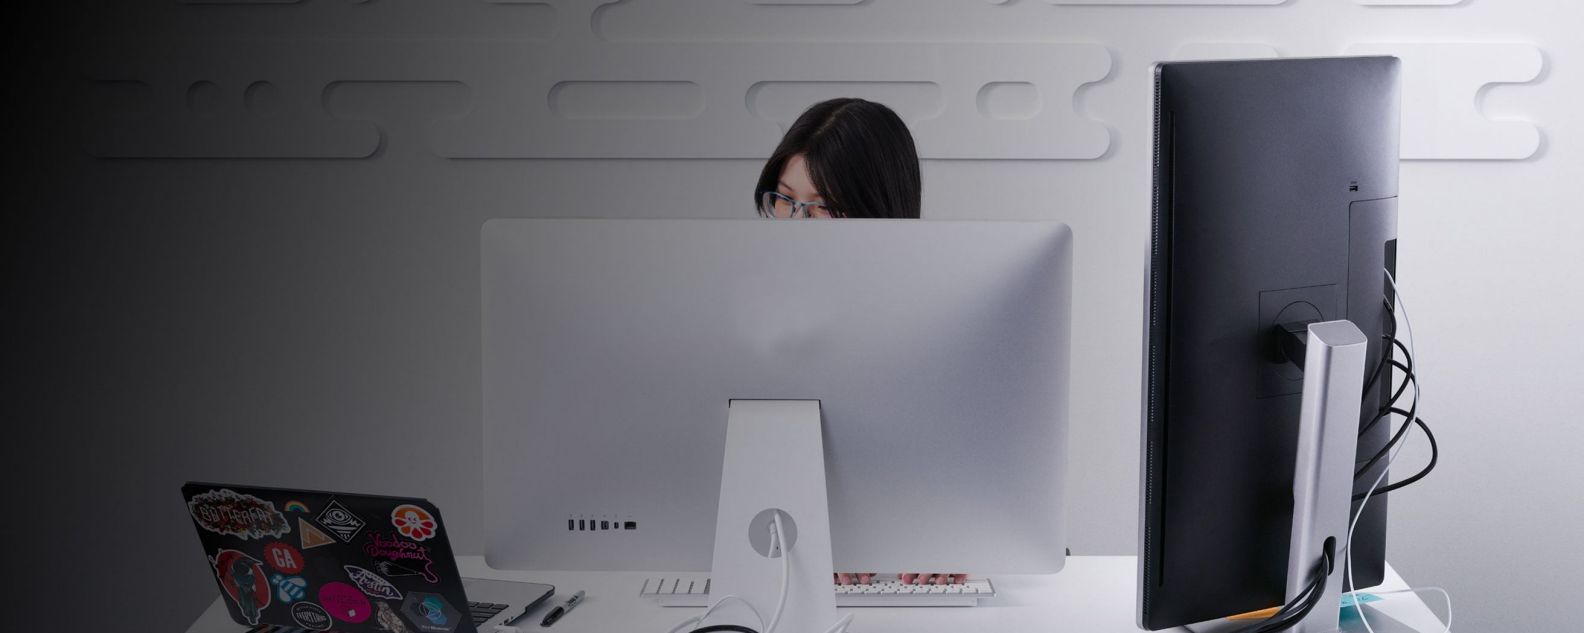 Mulher trabalhando concentrada em frente a um monitor de laptop